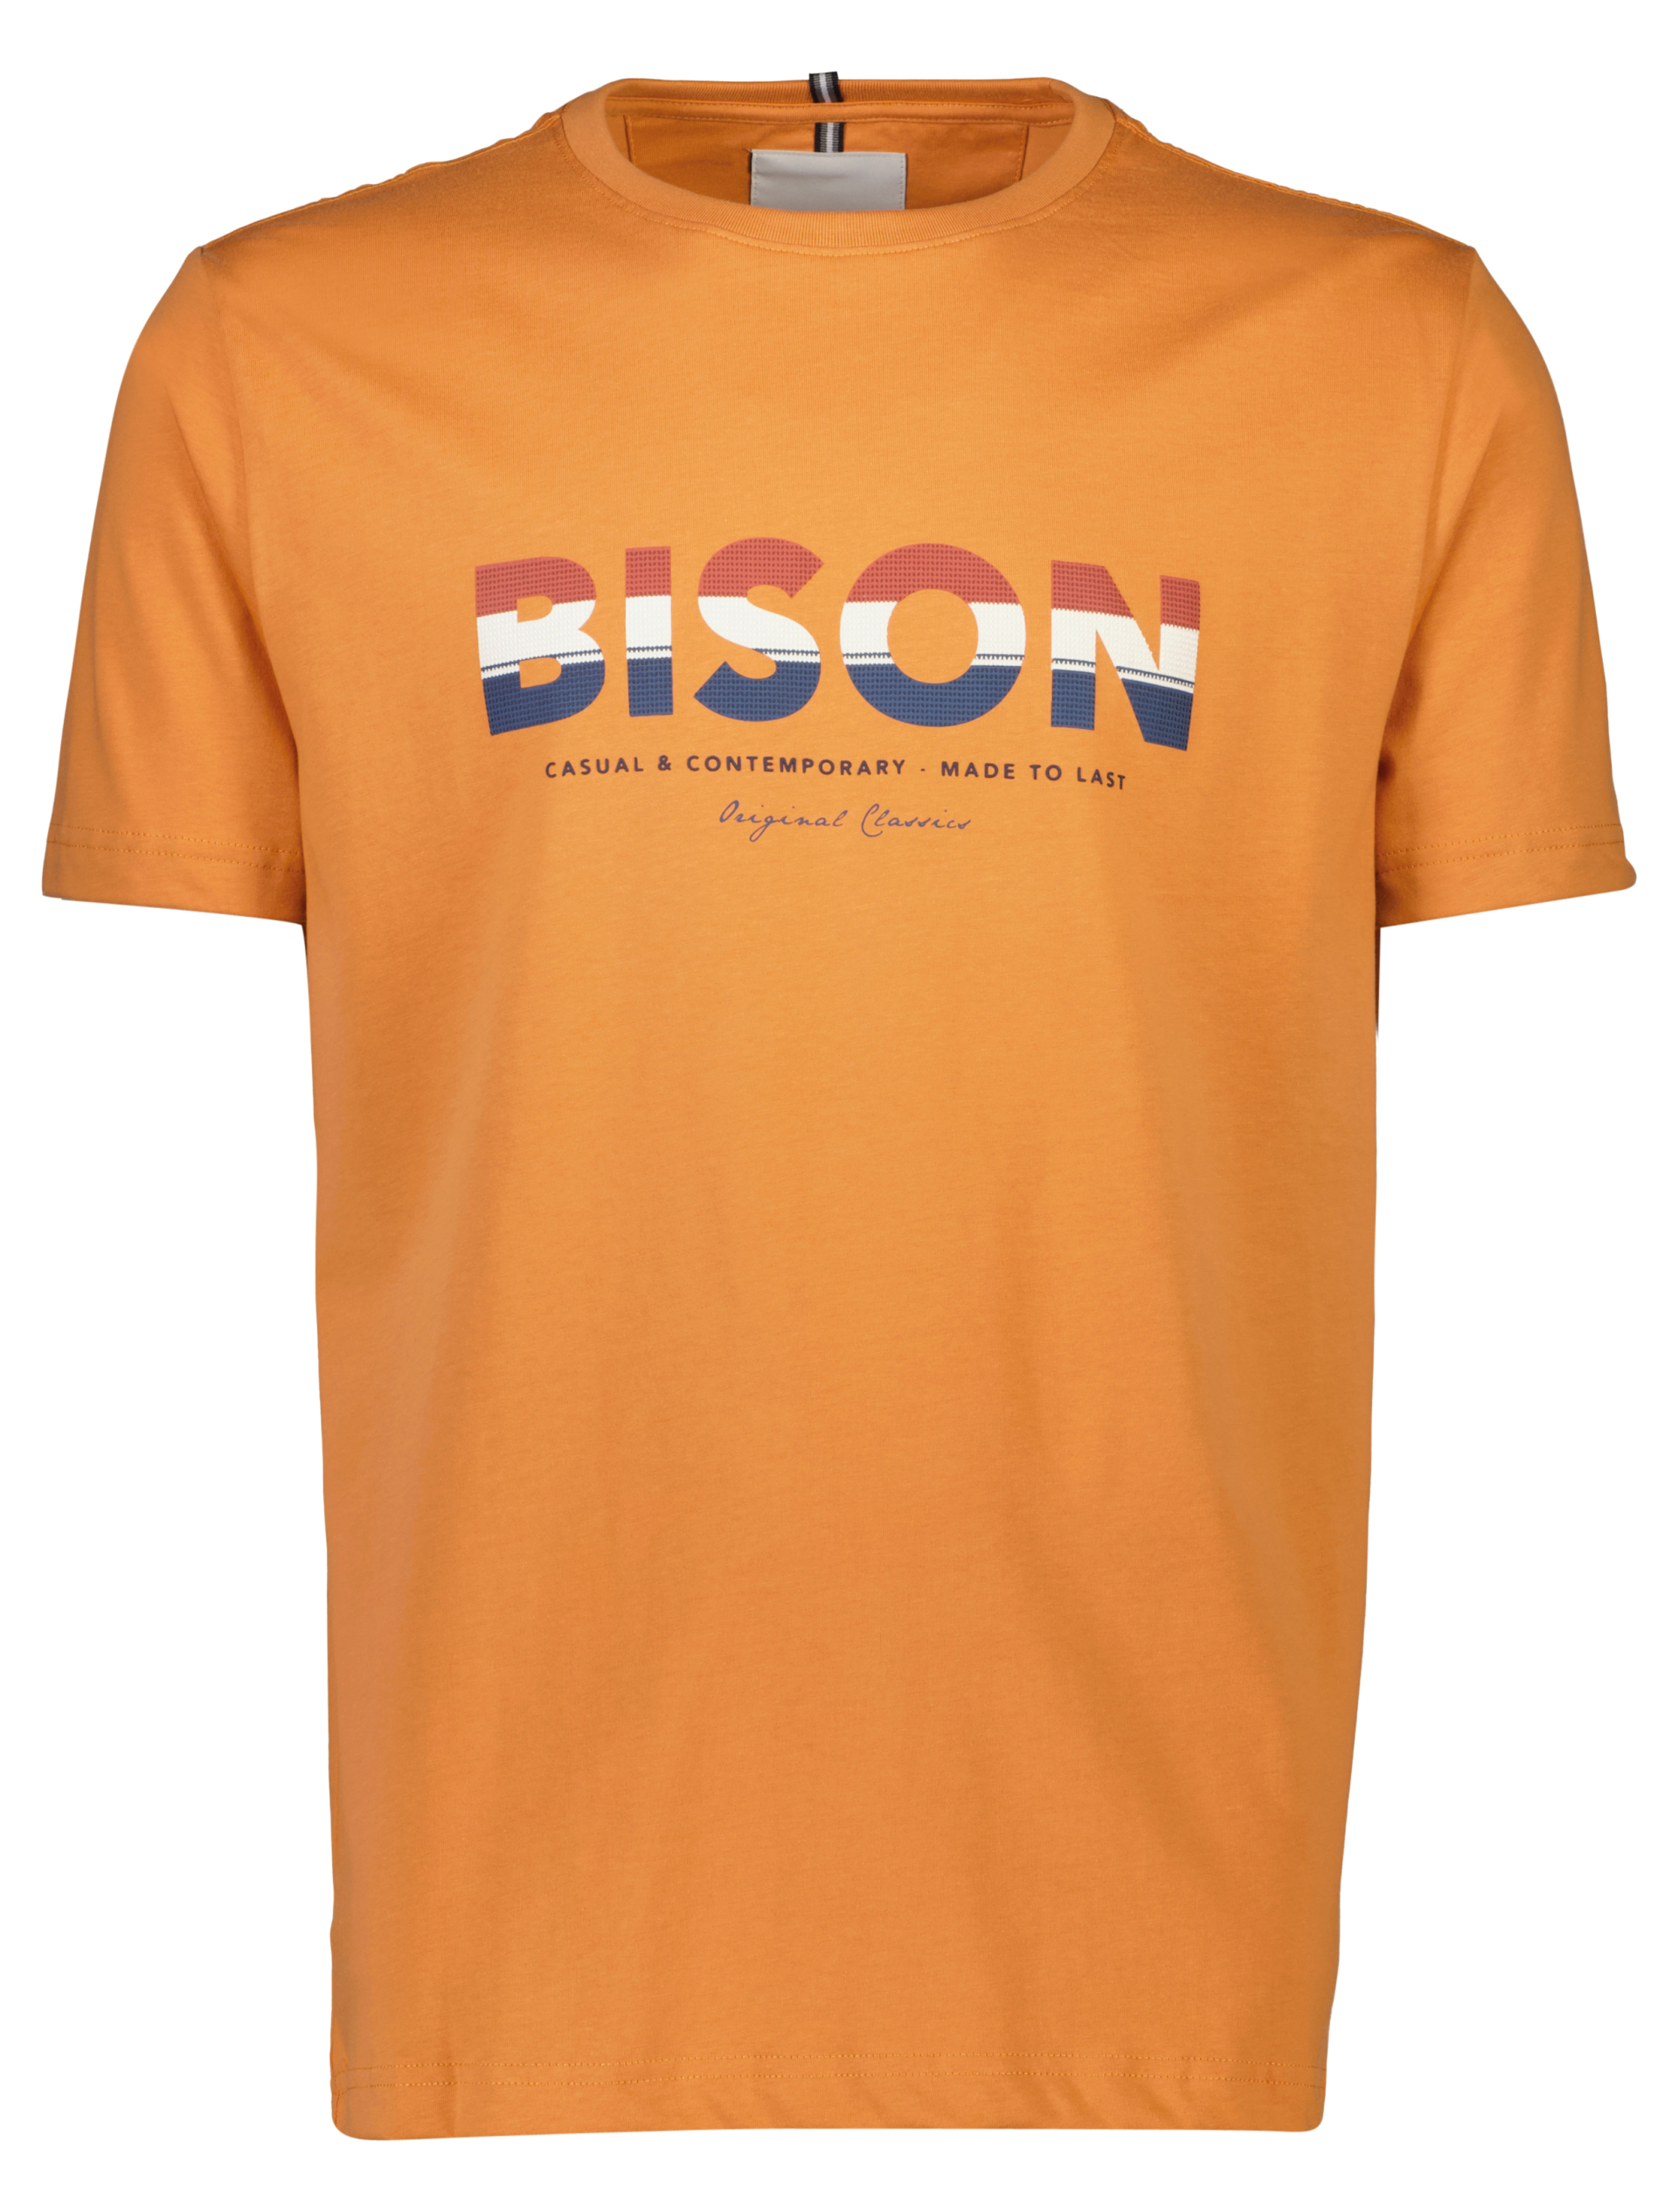 Bison T-shirt orange / lt orange